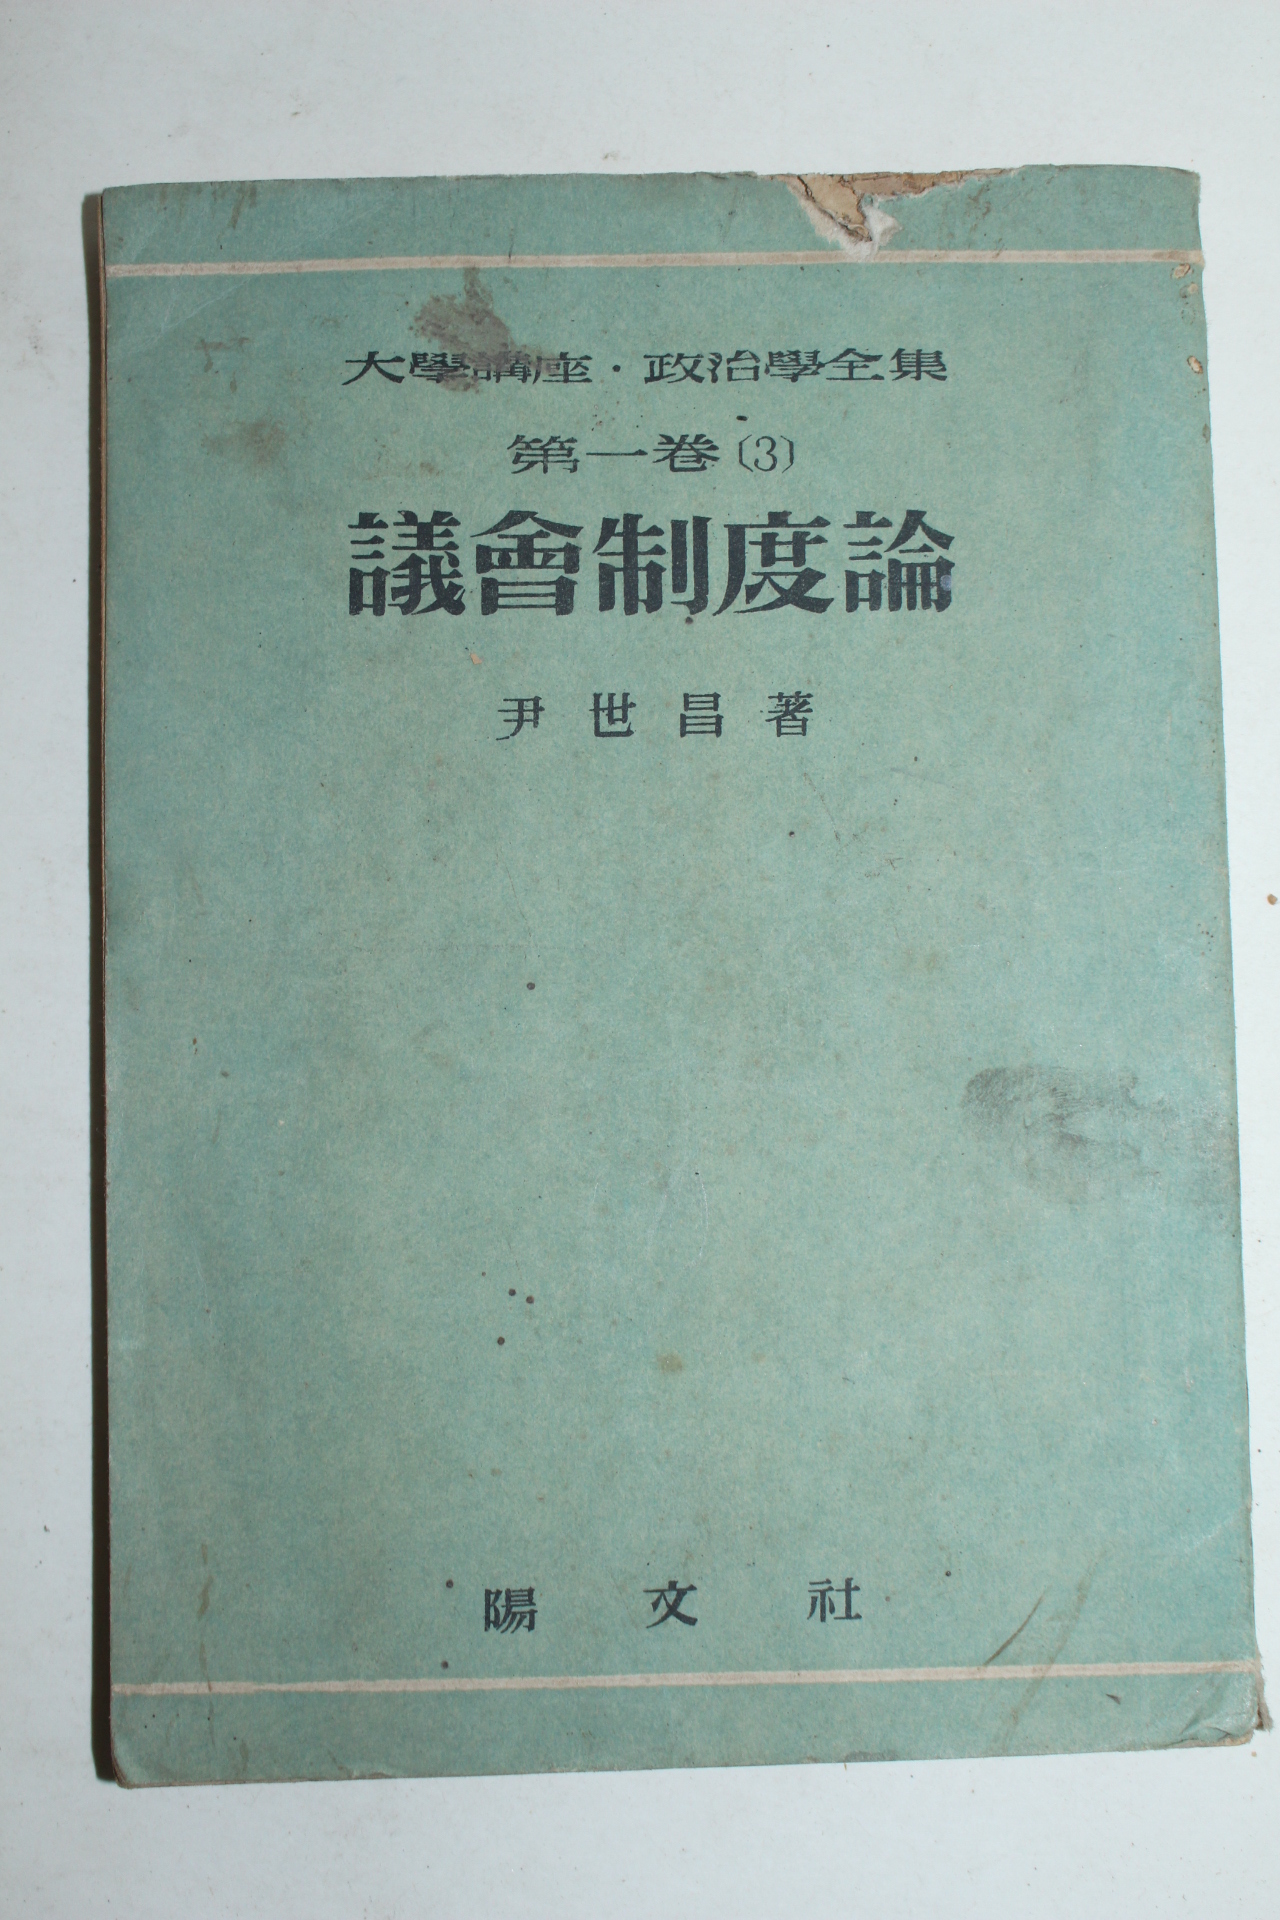 1955년초판 윤세창(尹世昌) 의회제도론